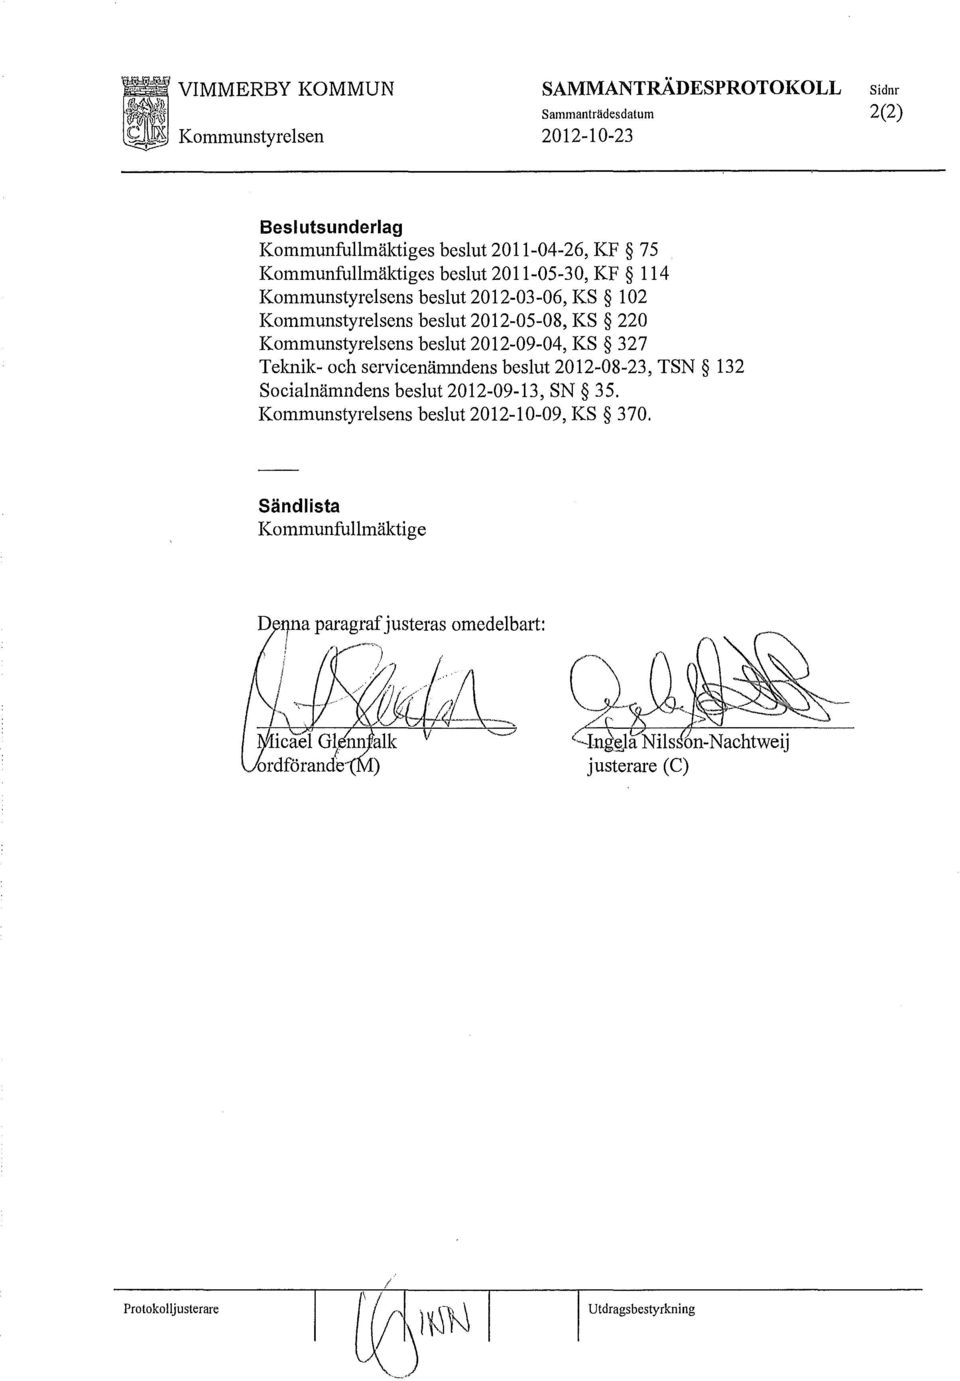 Kommunstyrelsens beslut 2012-09-04, KS 327 Telmik-och servicenämndens beslut 2012-08-23, TSN 132 Socialnämndens beslut 2012-09-13, SN 35.